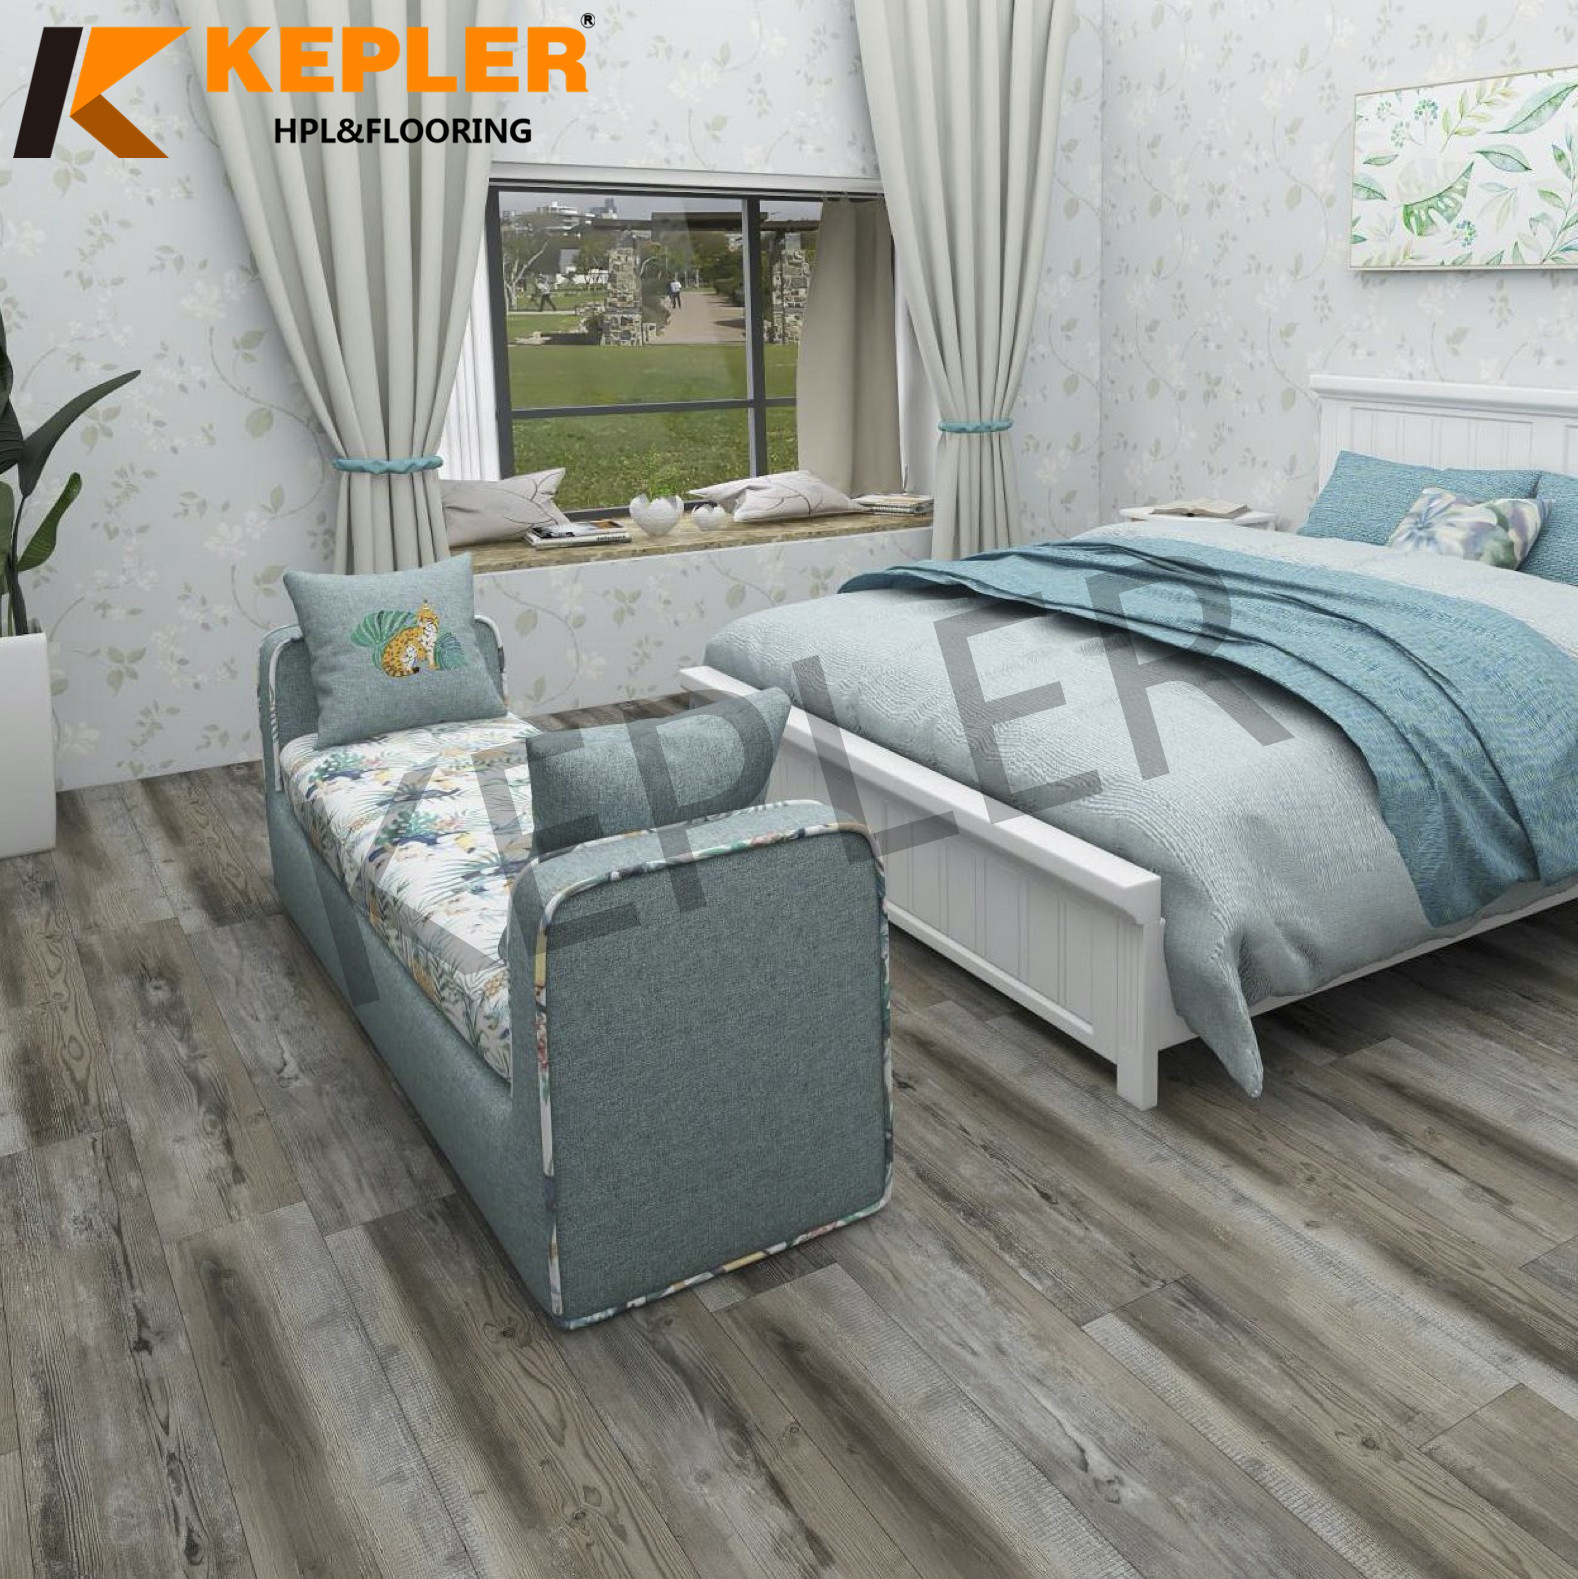 Kepler 1830MM Hybrid RVP Rigid Vinyl Plank SPC Flooring